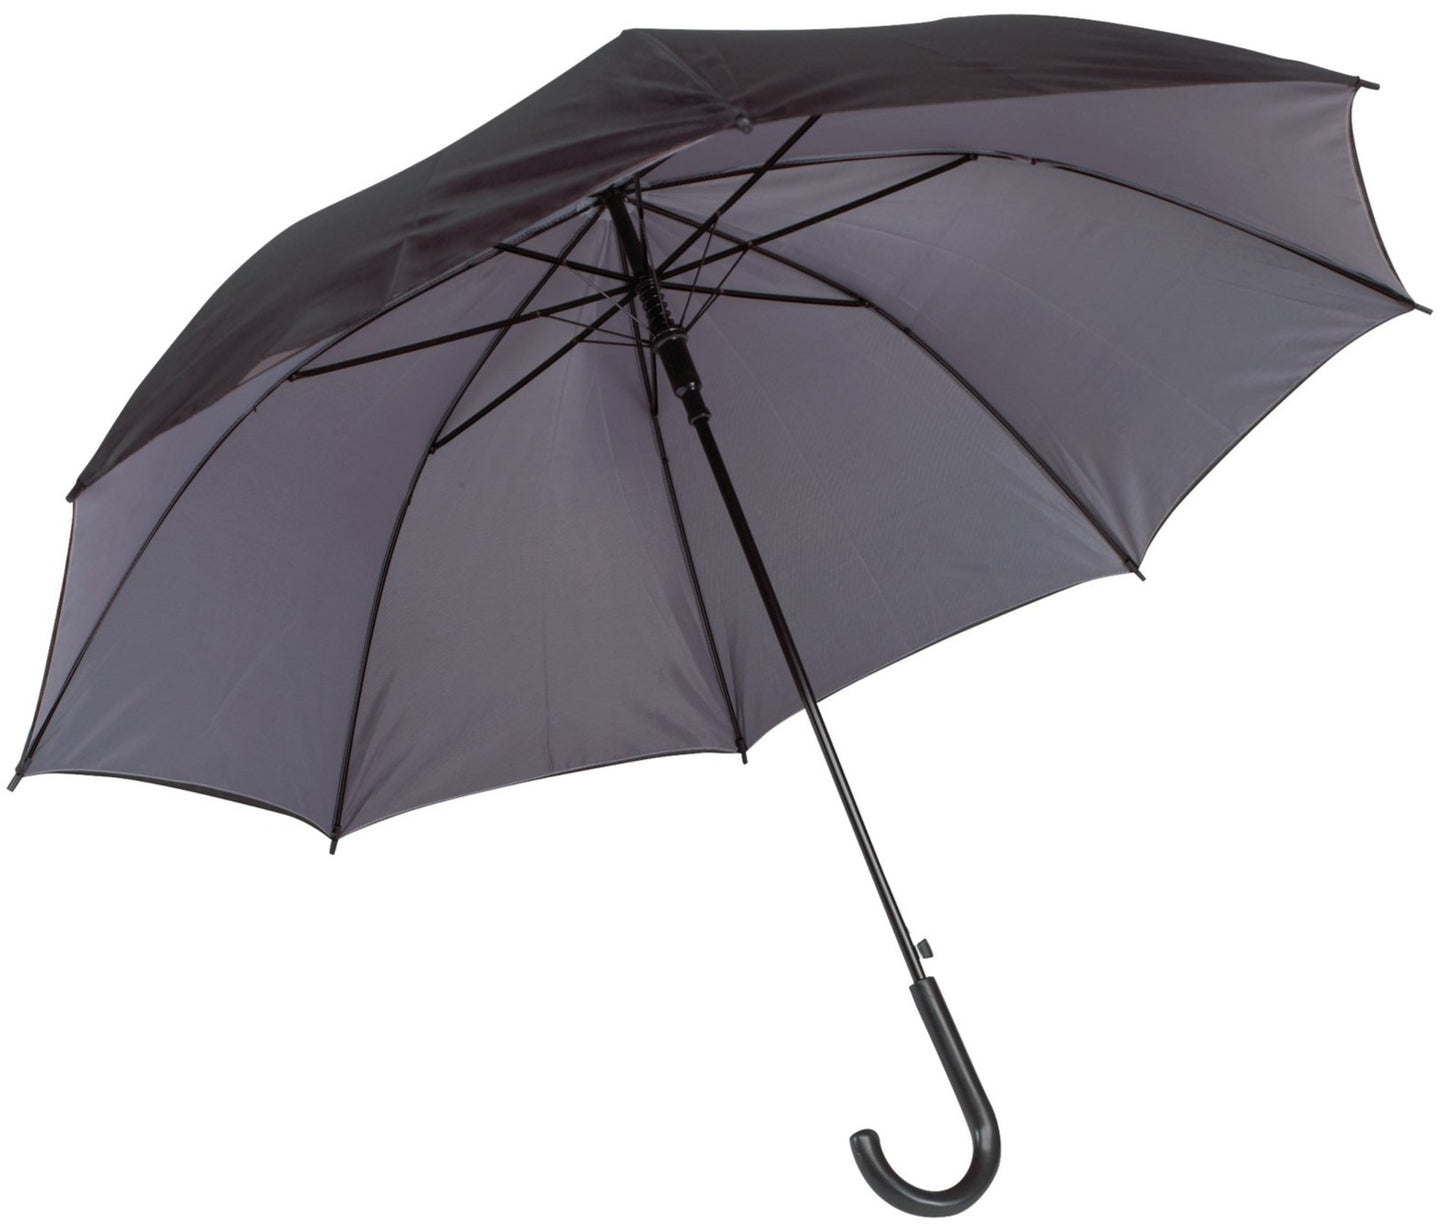 Γκρι/μαύρη, ομπρέλα με διπλό ύφασμα, μακριά και αυτόματη.